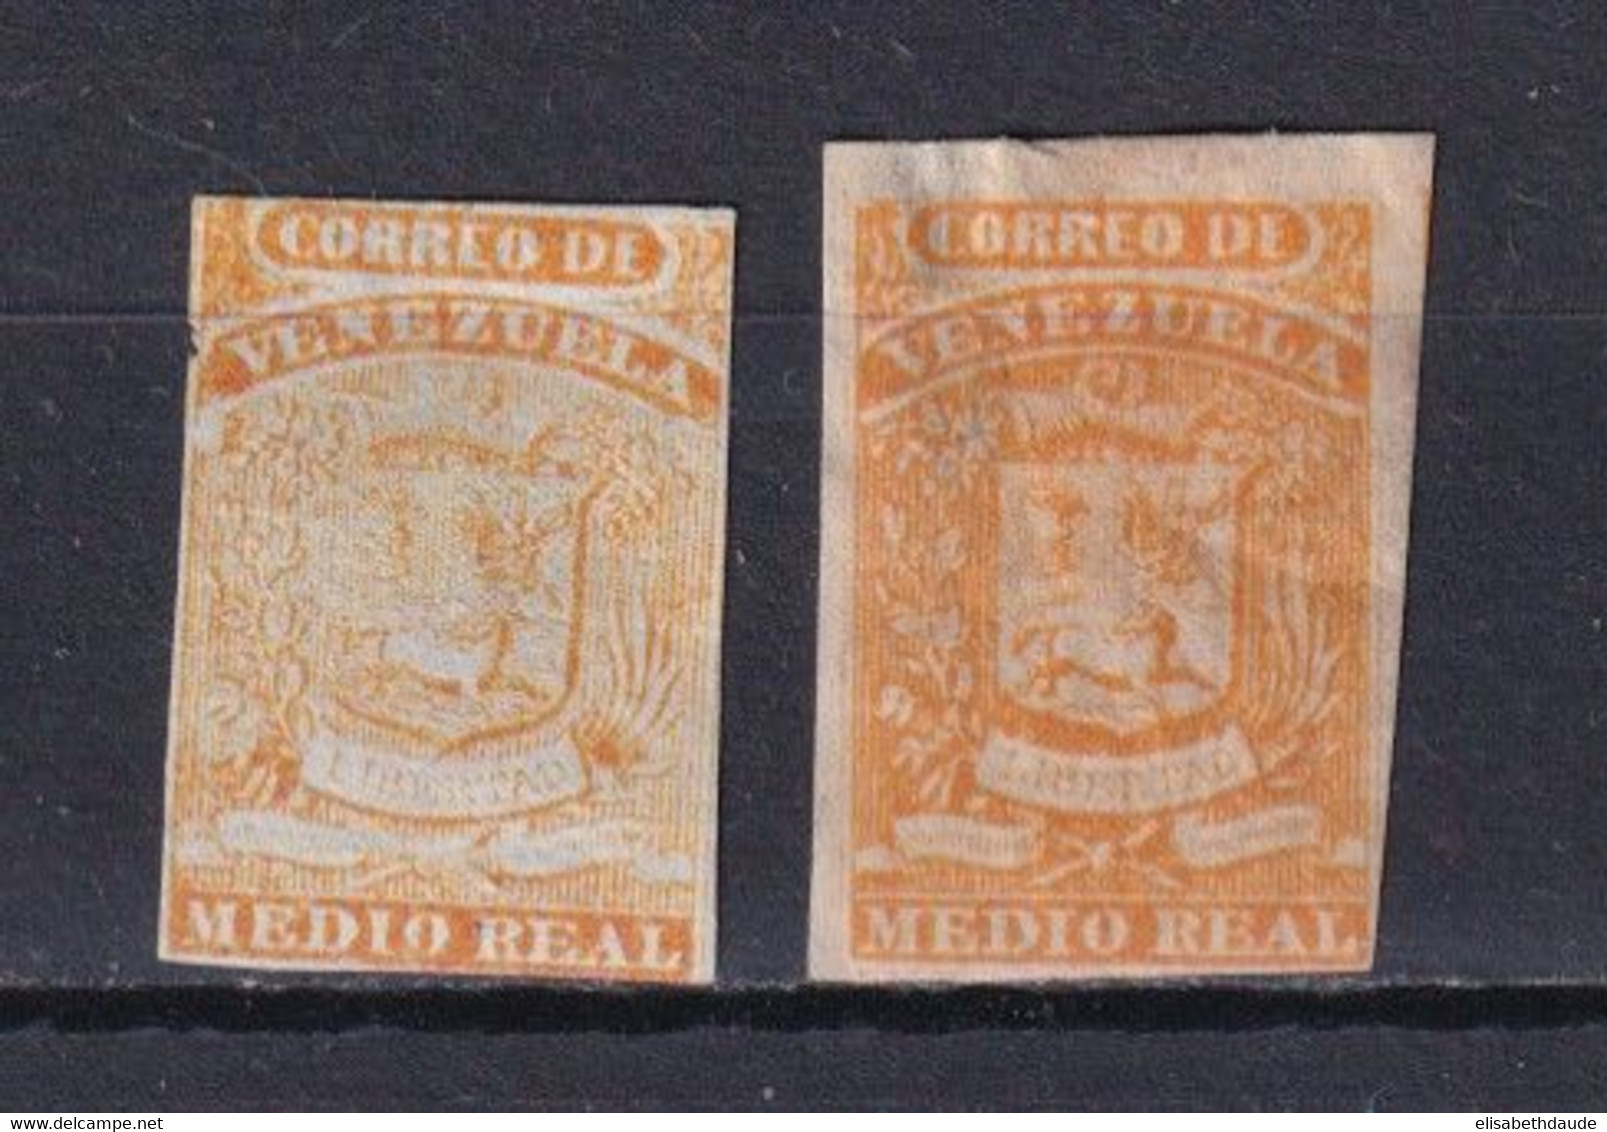 VENEZUELA - 1859 - YVERT N° 1 X2 * / (*) DEFECTUEUX (AMINCI / THIN + MARGES COURTES) - COTE = 120 EUR. - Venezuela